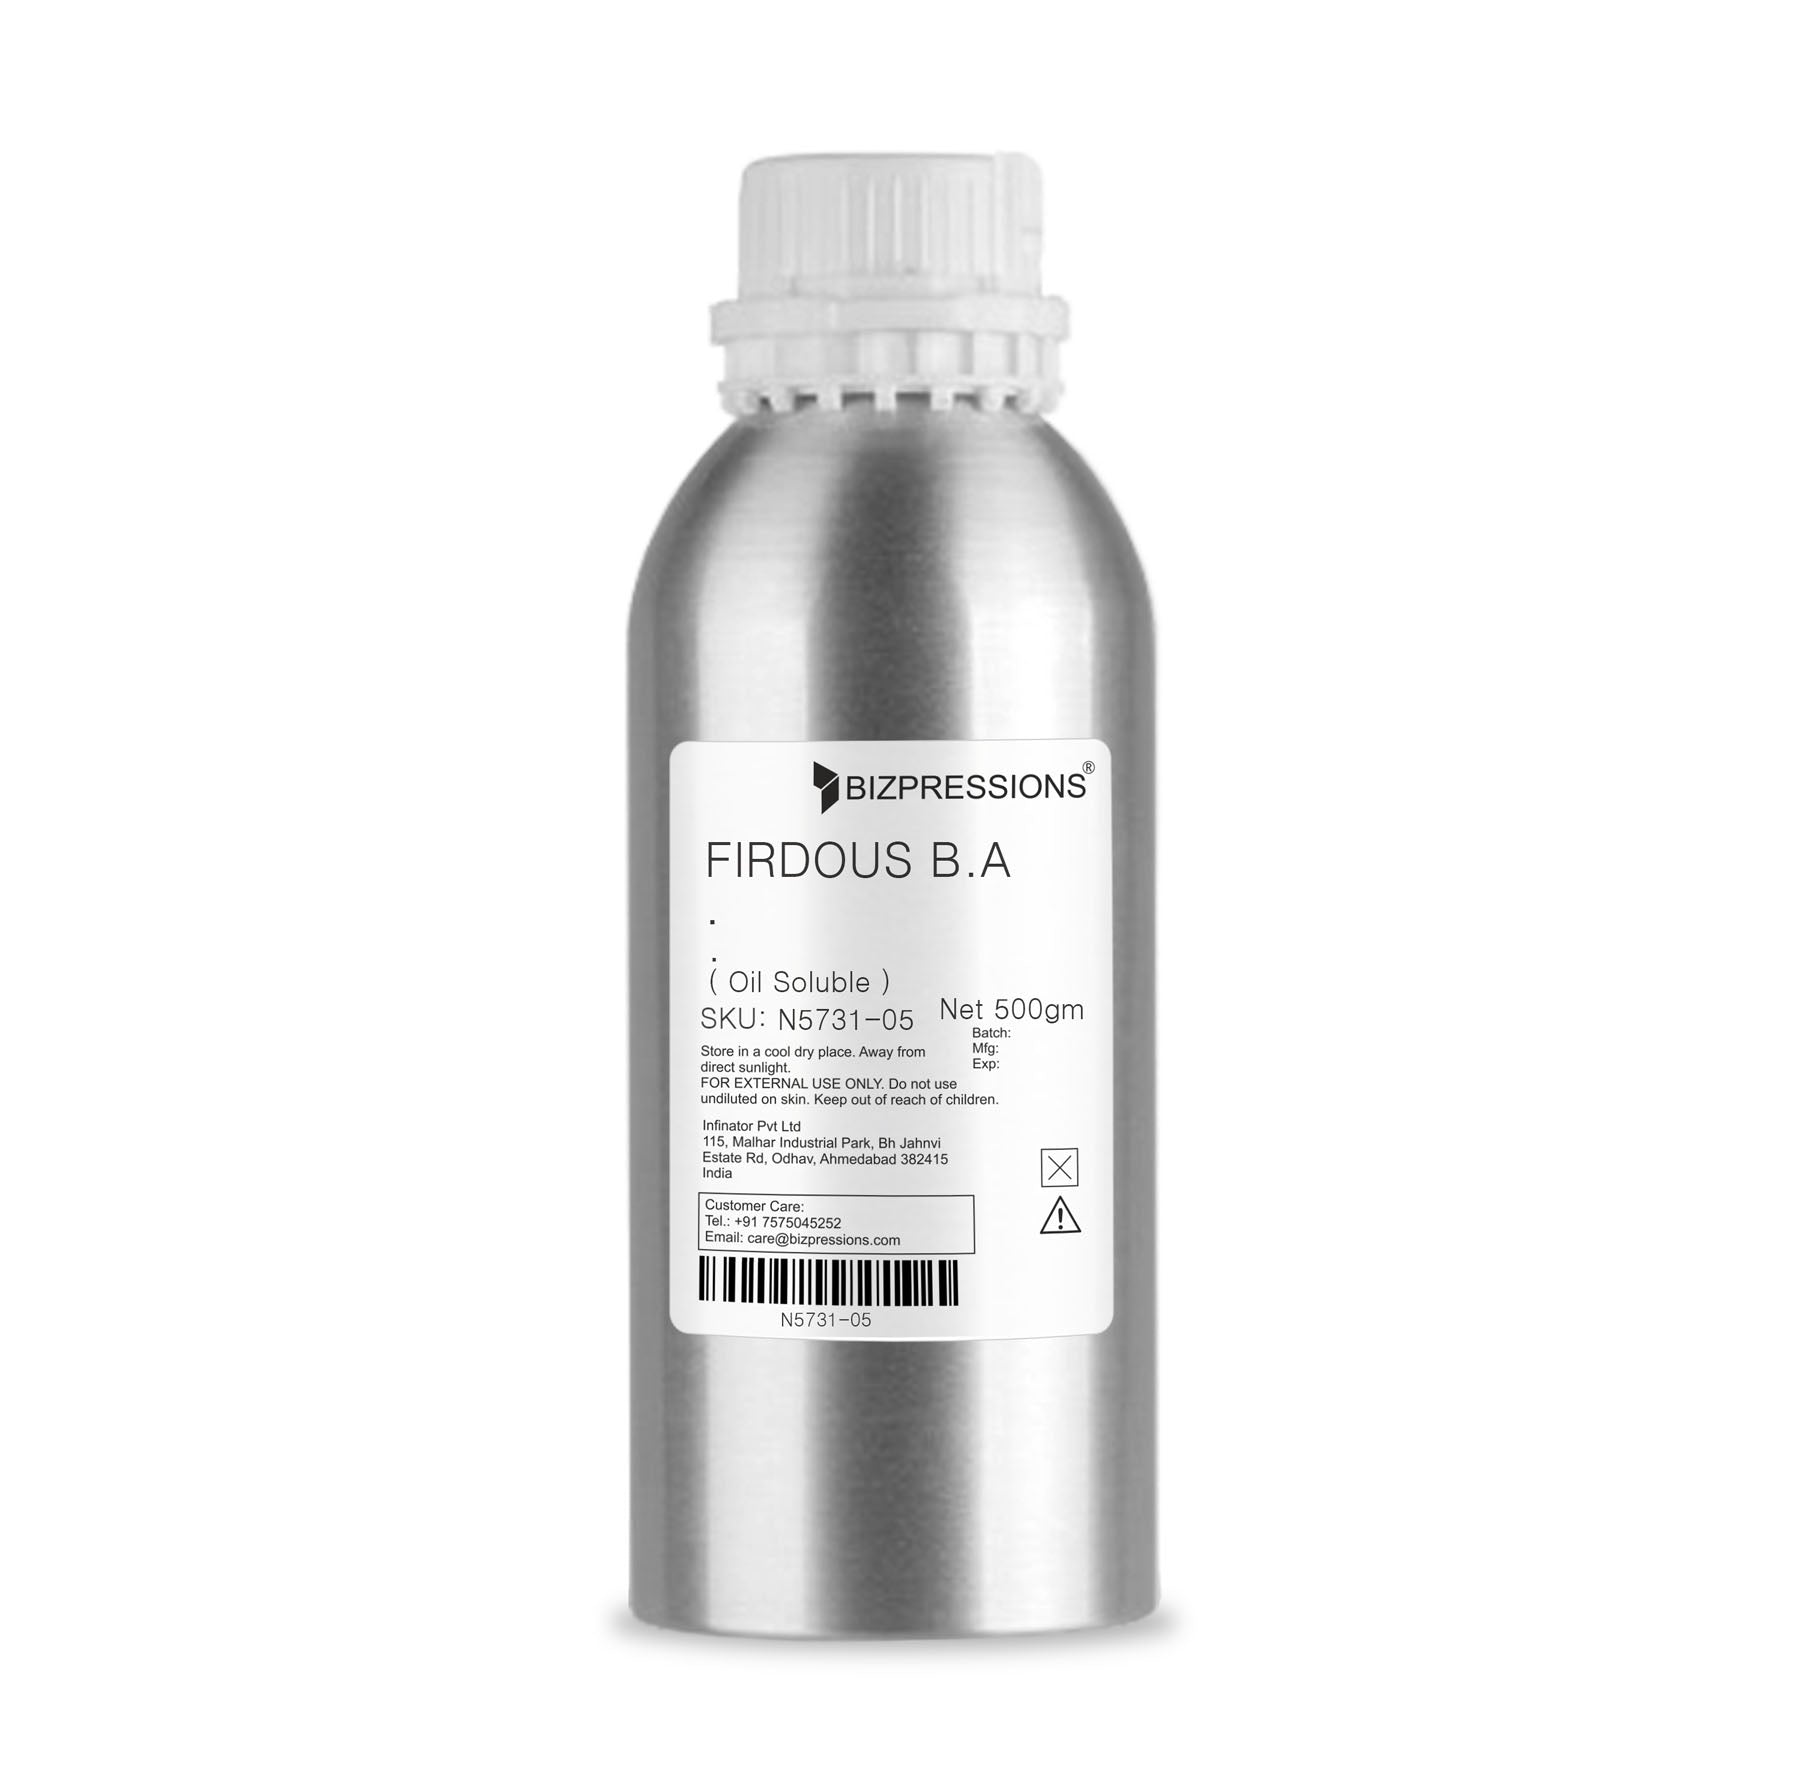 FIRDOUS B.A - Fragrance ( Oil Soluble ) - 500 gm